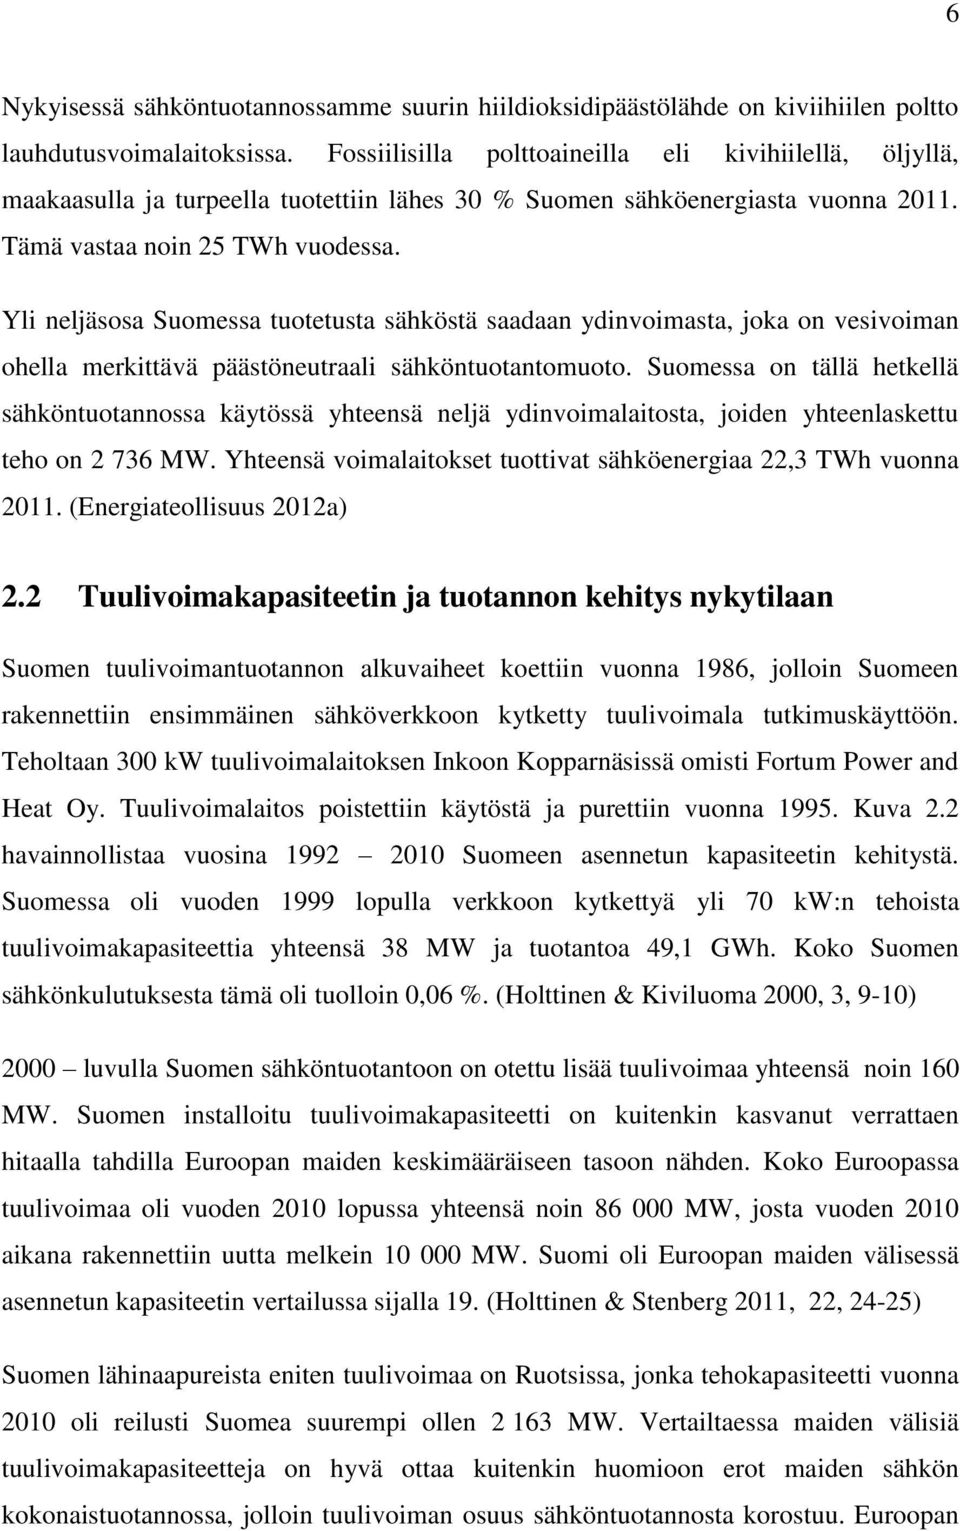 Yli neljäsosa Suomessa tuotetusta sähköstä saadaan ydinvoimasta, joka on vesivoiman ohella merkittävä päästöneutraali sähköntuotantomuoto.